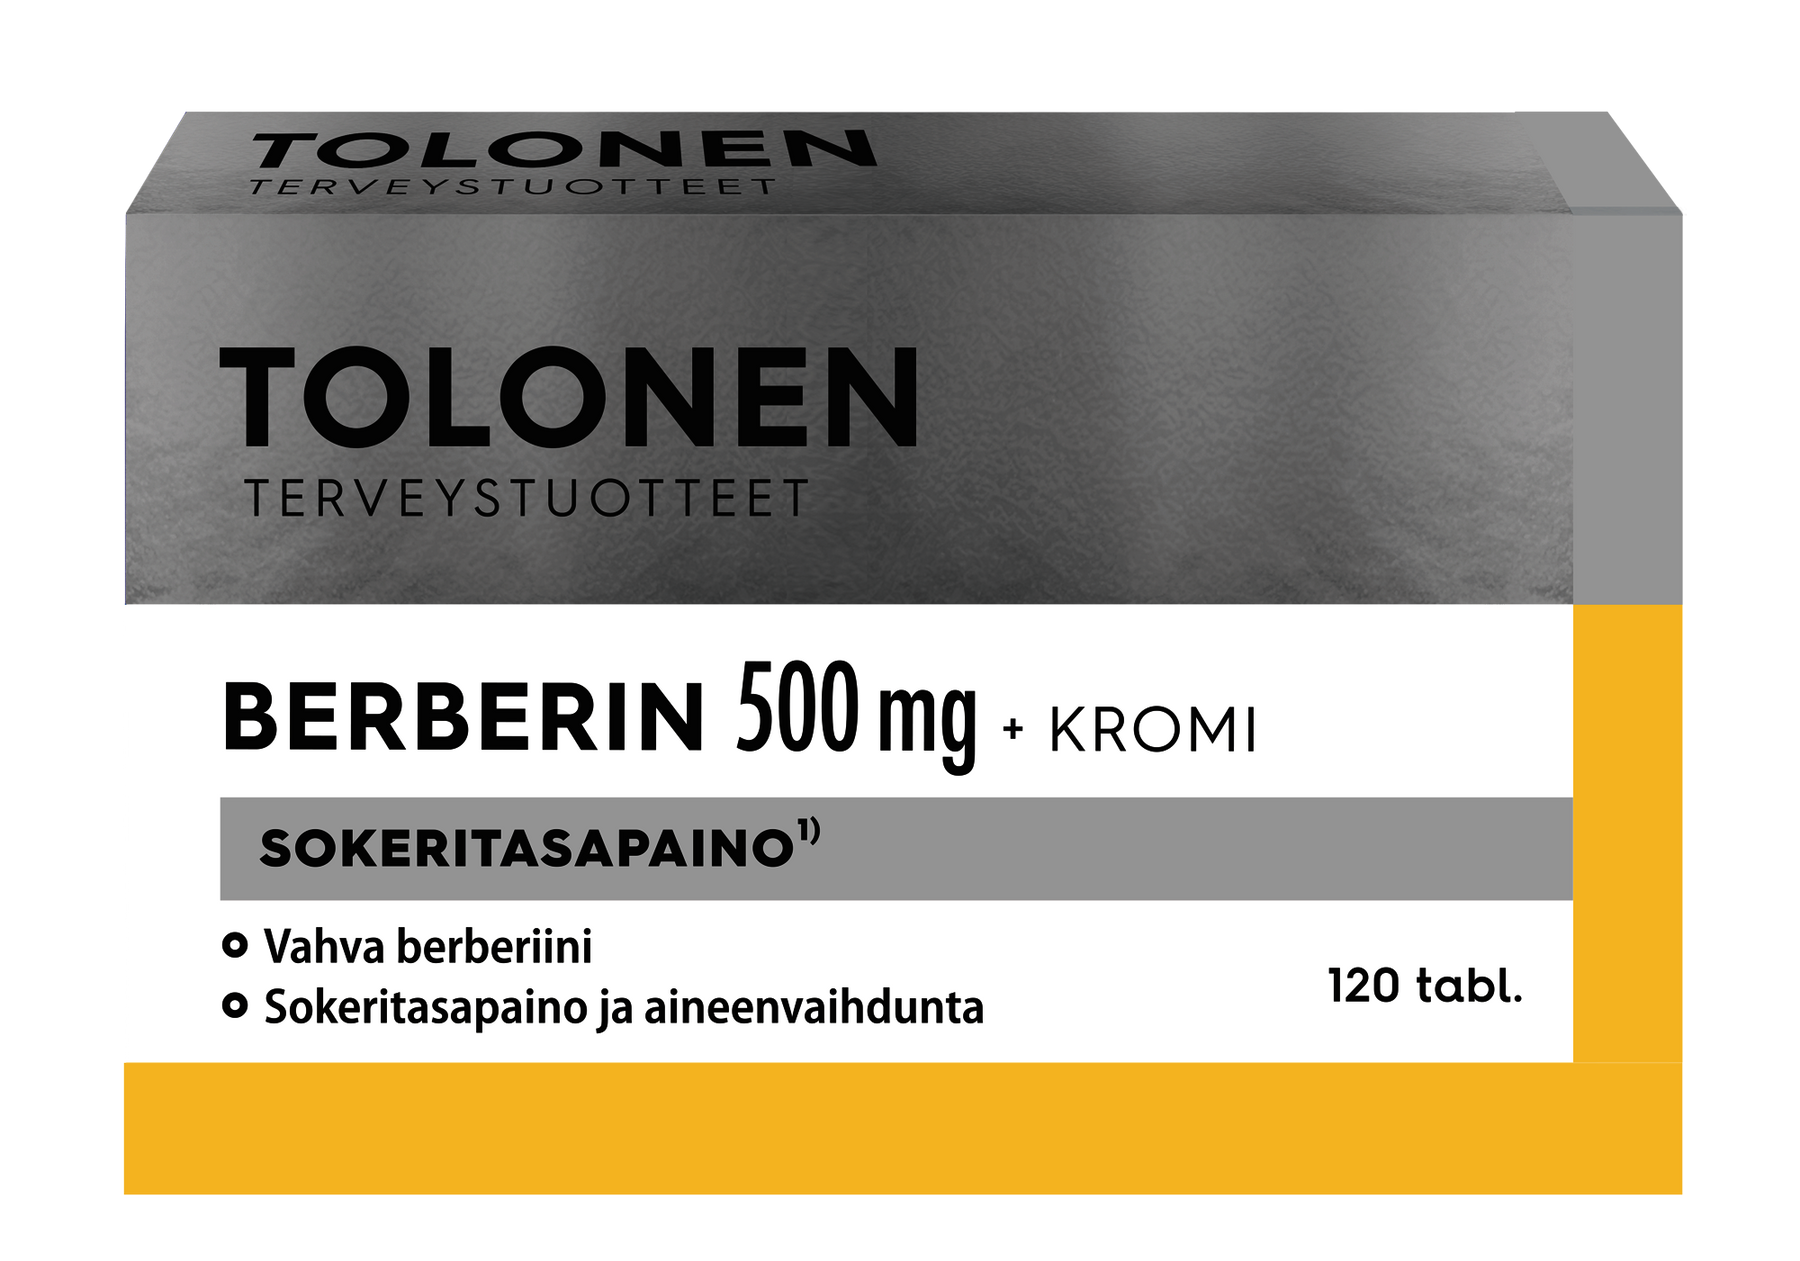 Tolonen Berberin 500 mg + Kromi 120 tabl. - toimituskatkos, ei tietoa milloin saa lisää